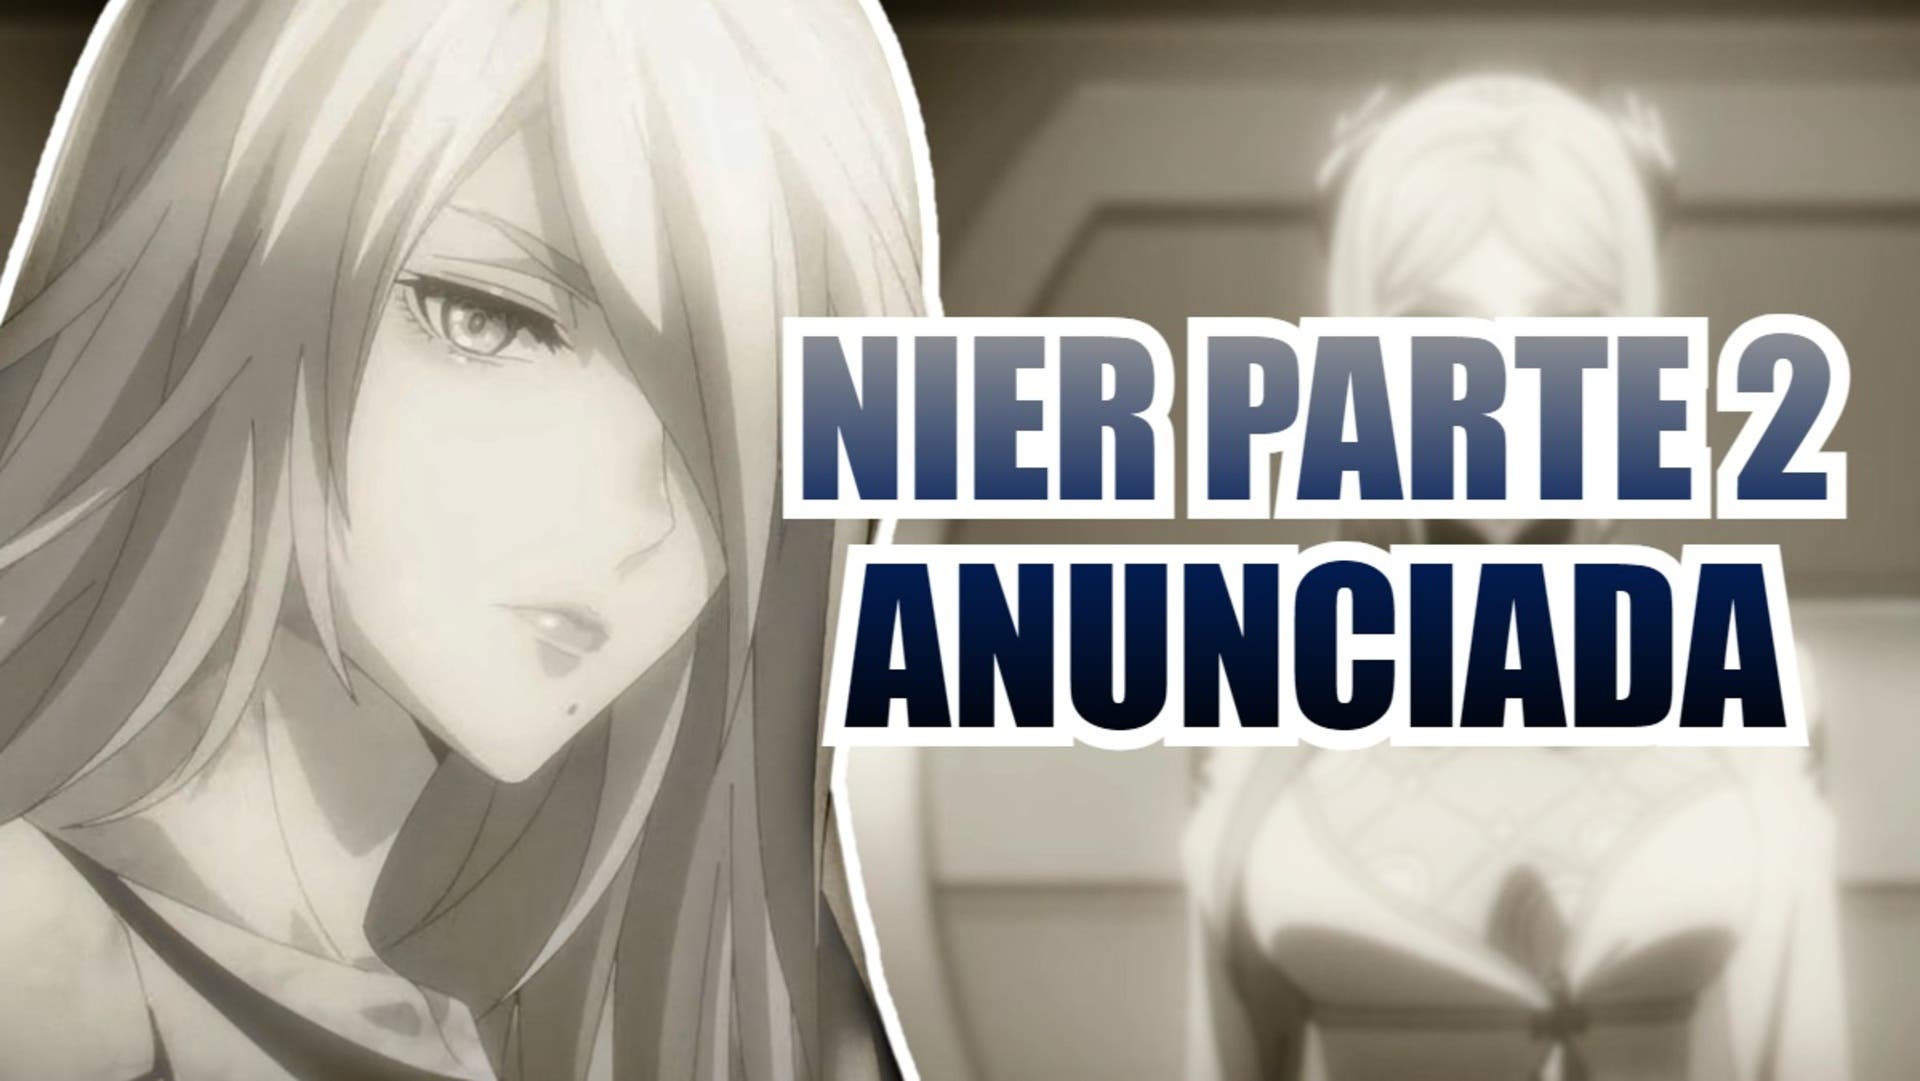 Confirmada segunda parte do anime NieR: Automata Ver1.1a